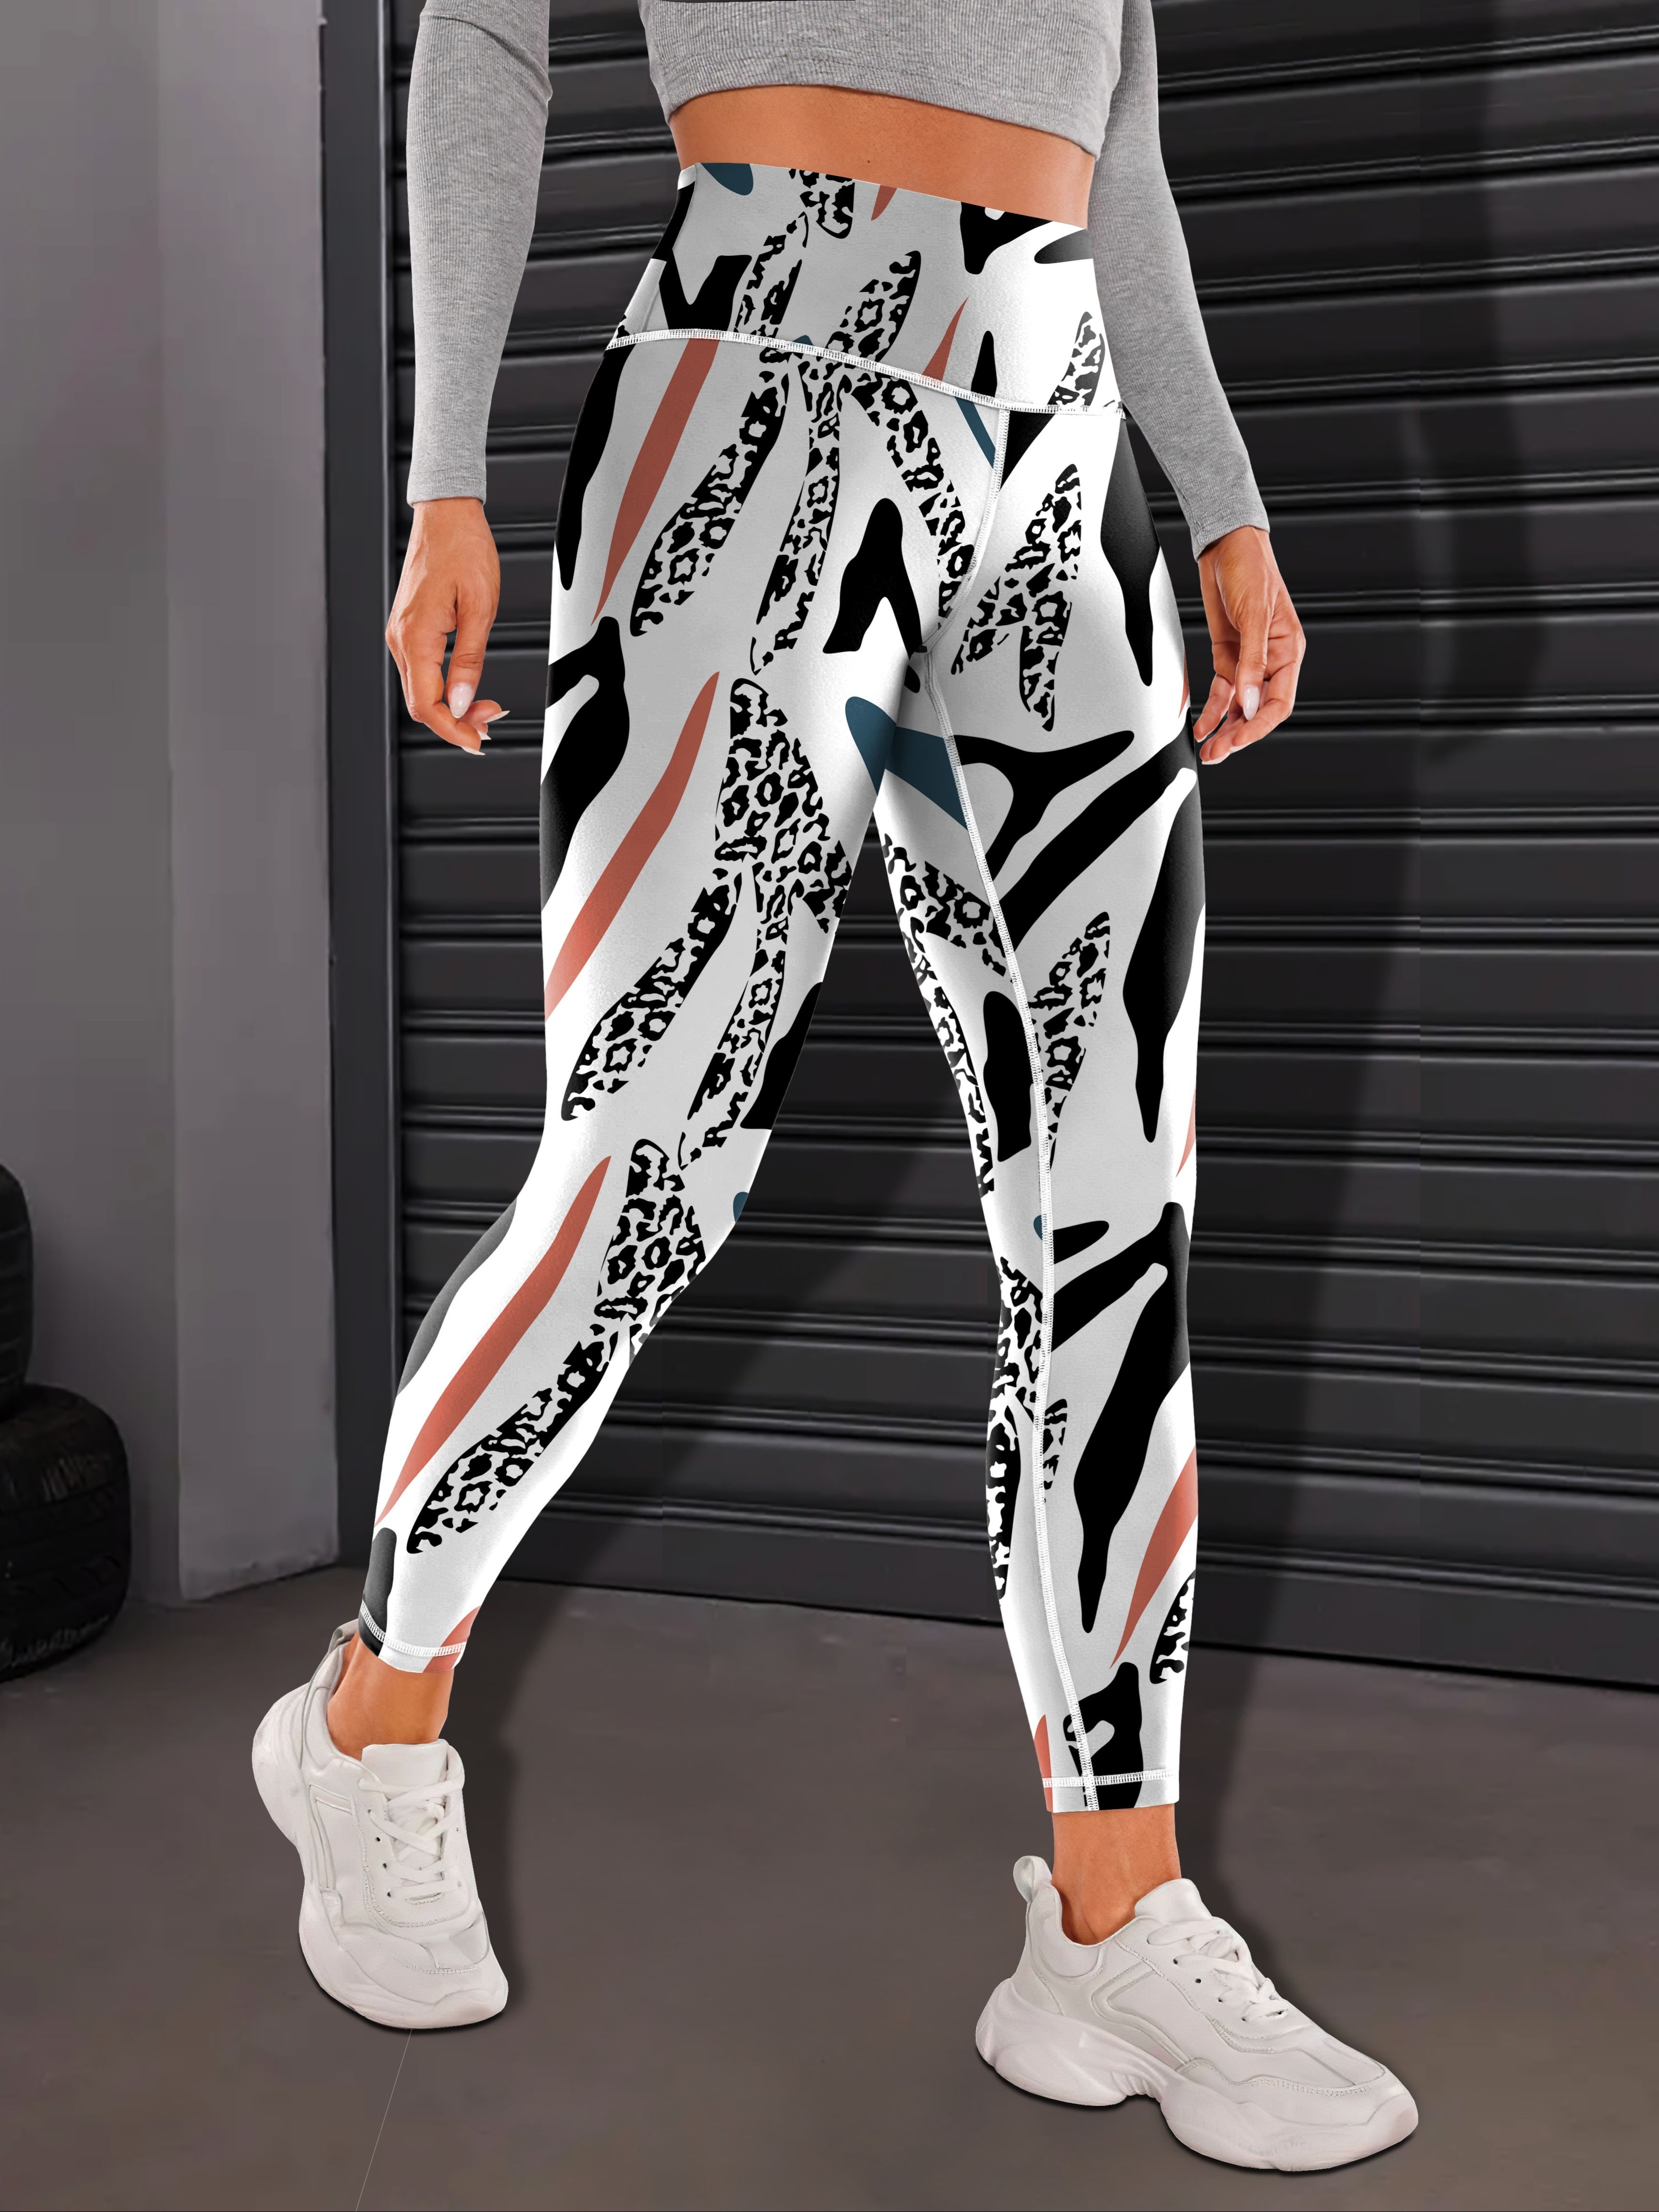 Women's Activewear: Colorful Zebra Pattern Yoga Leggings - Temu